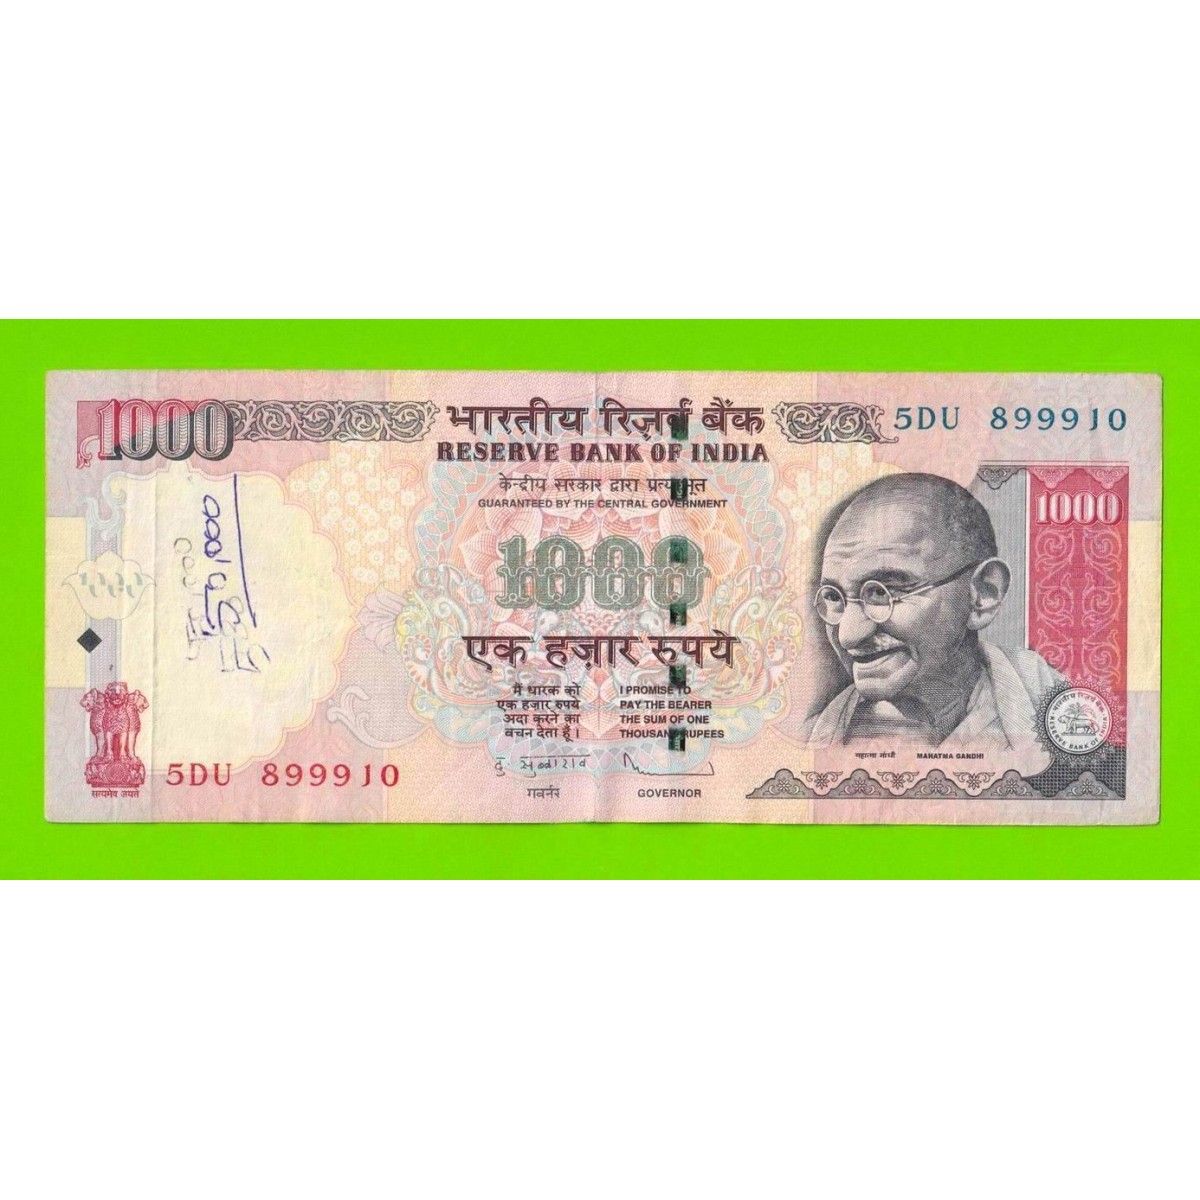 Рупий к российскому рублю. 1000 Индийских рупий. Индийская валюта 1000. Индонезийская валюта в 1000. Банкноты 1000 рупий.